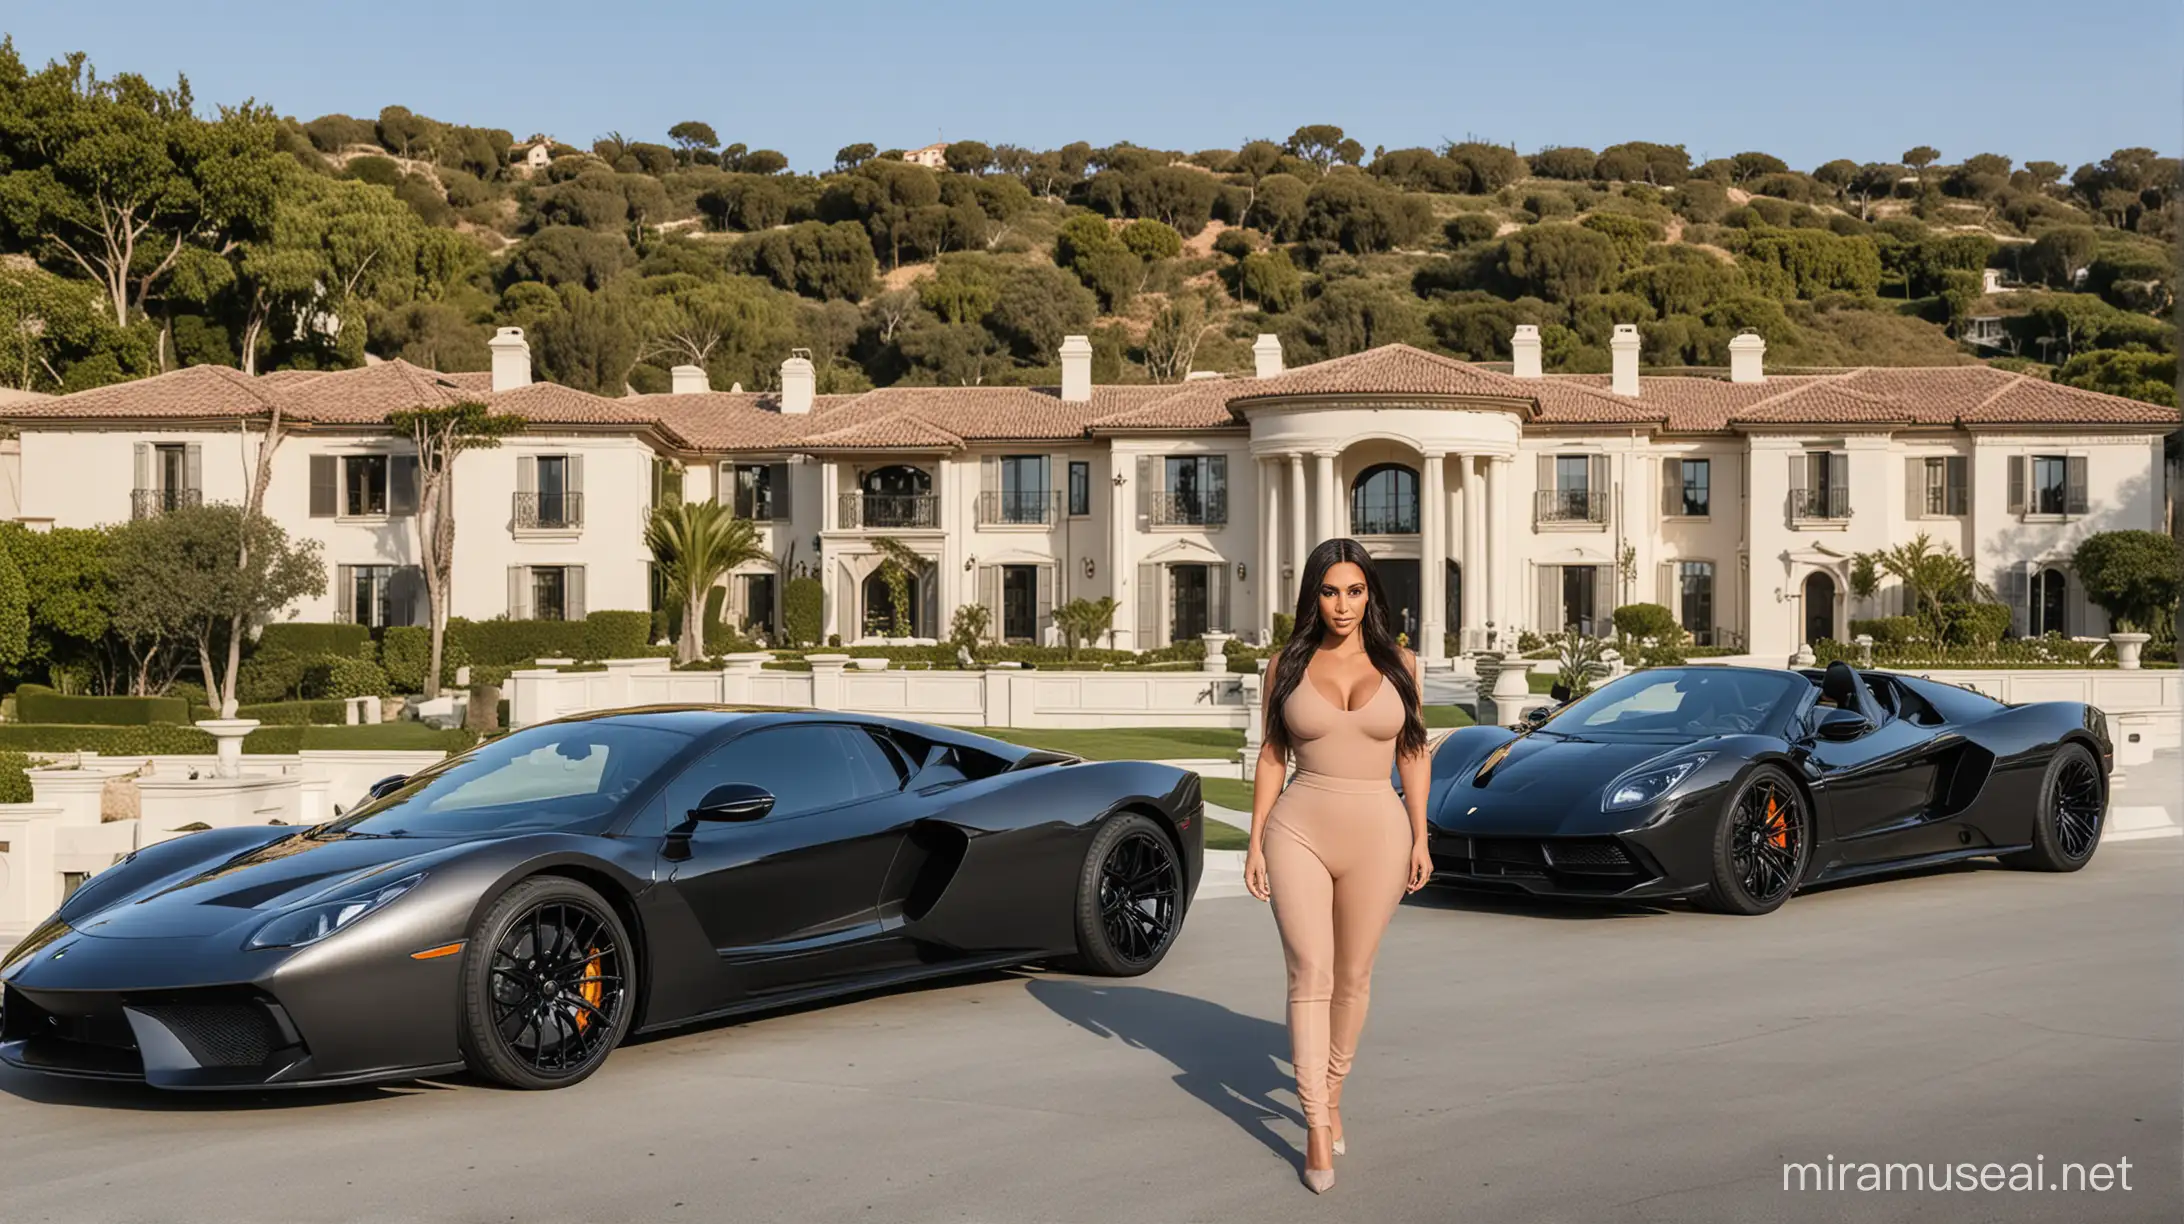 Kim Kardashians Luxurious Estate and Car Collection